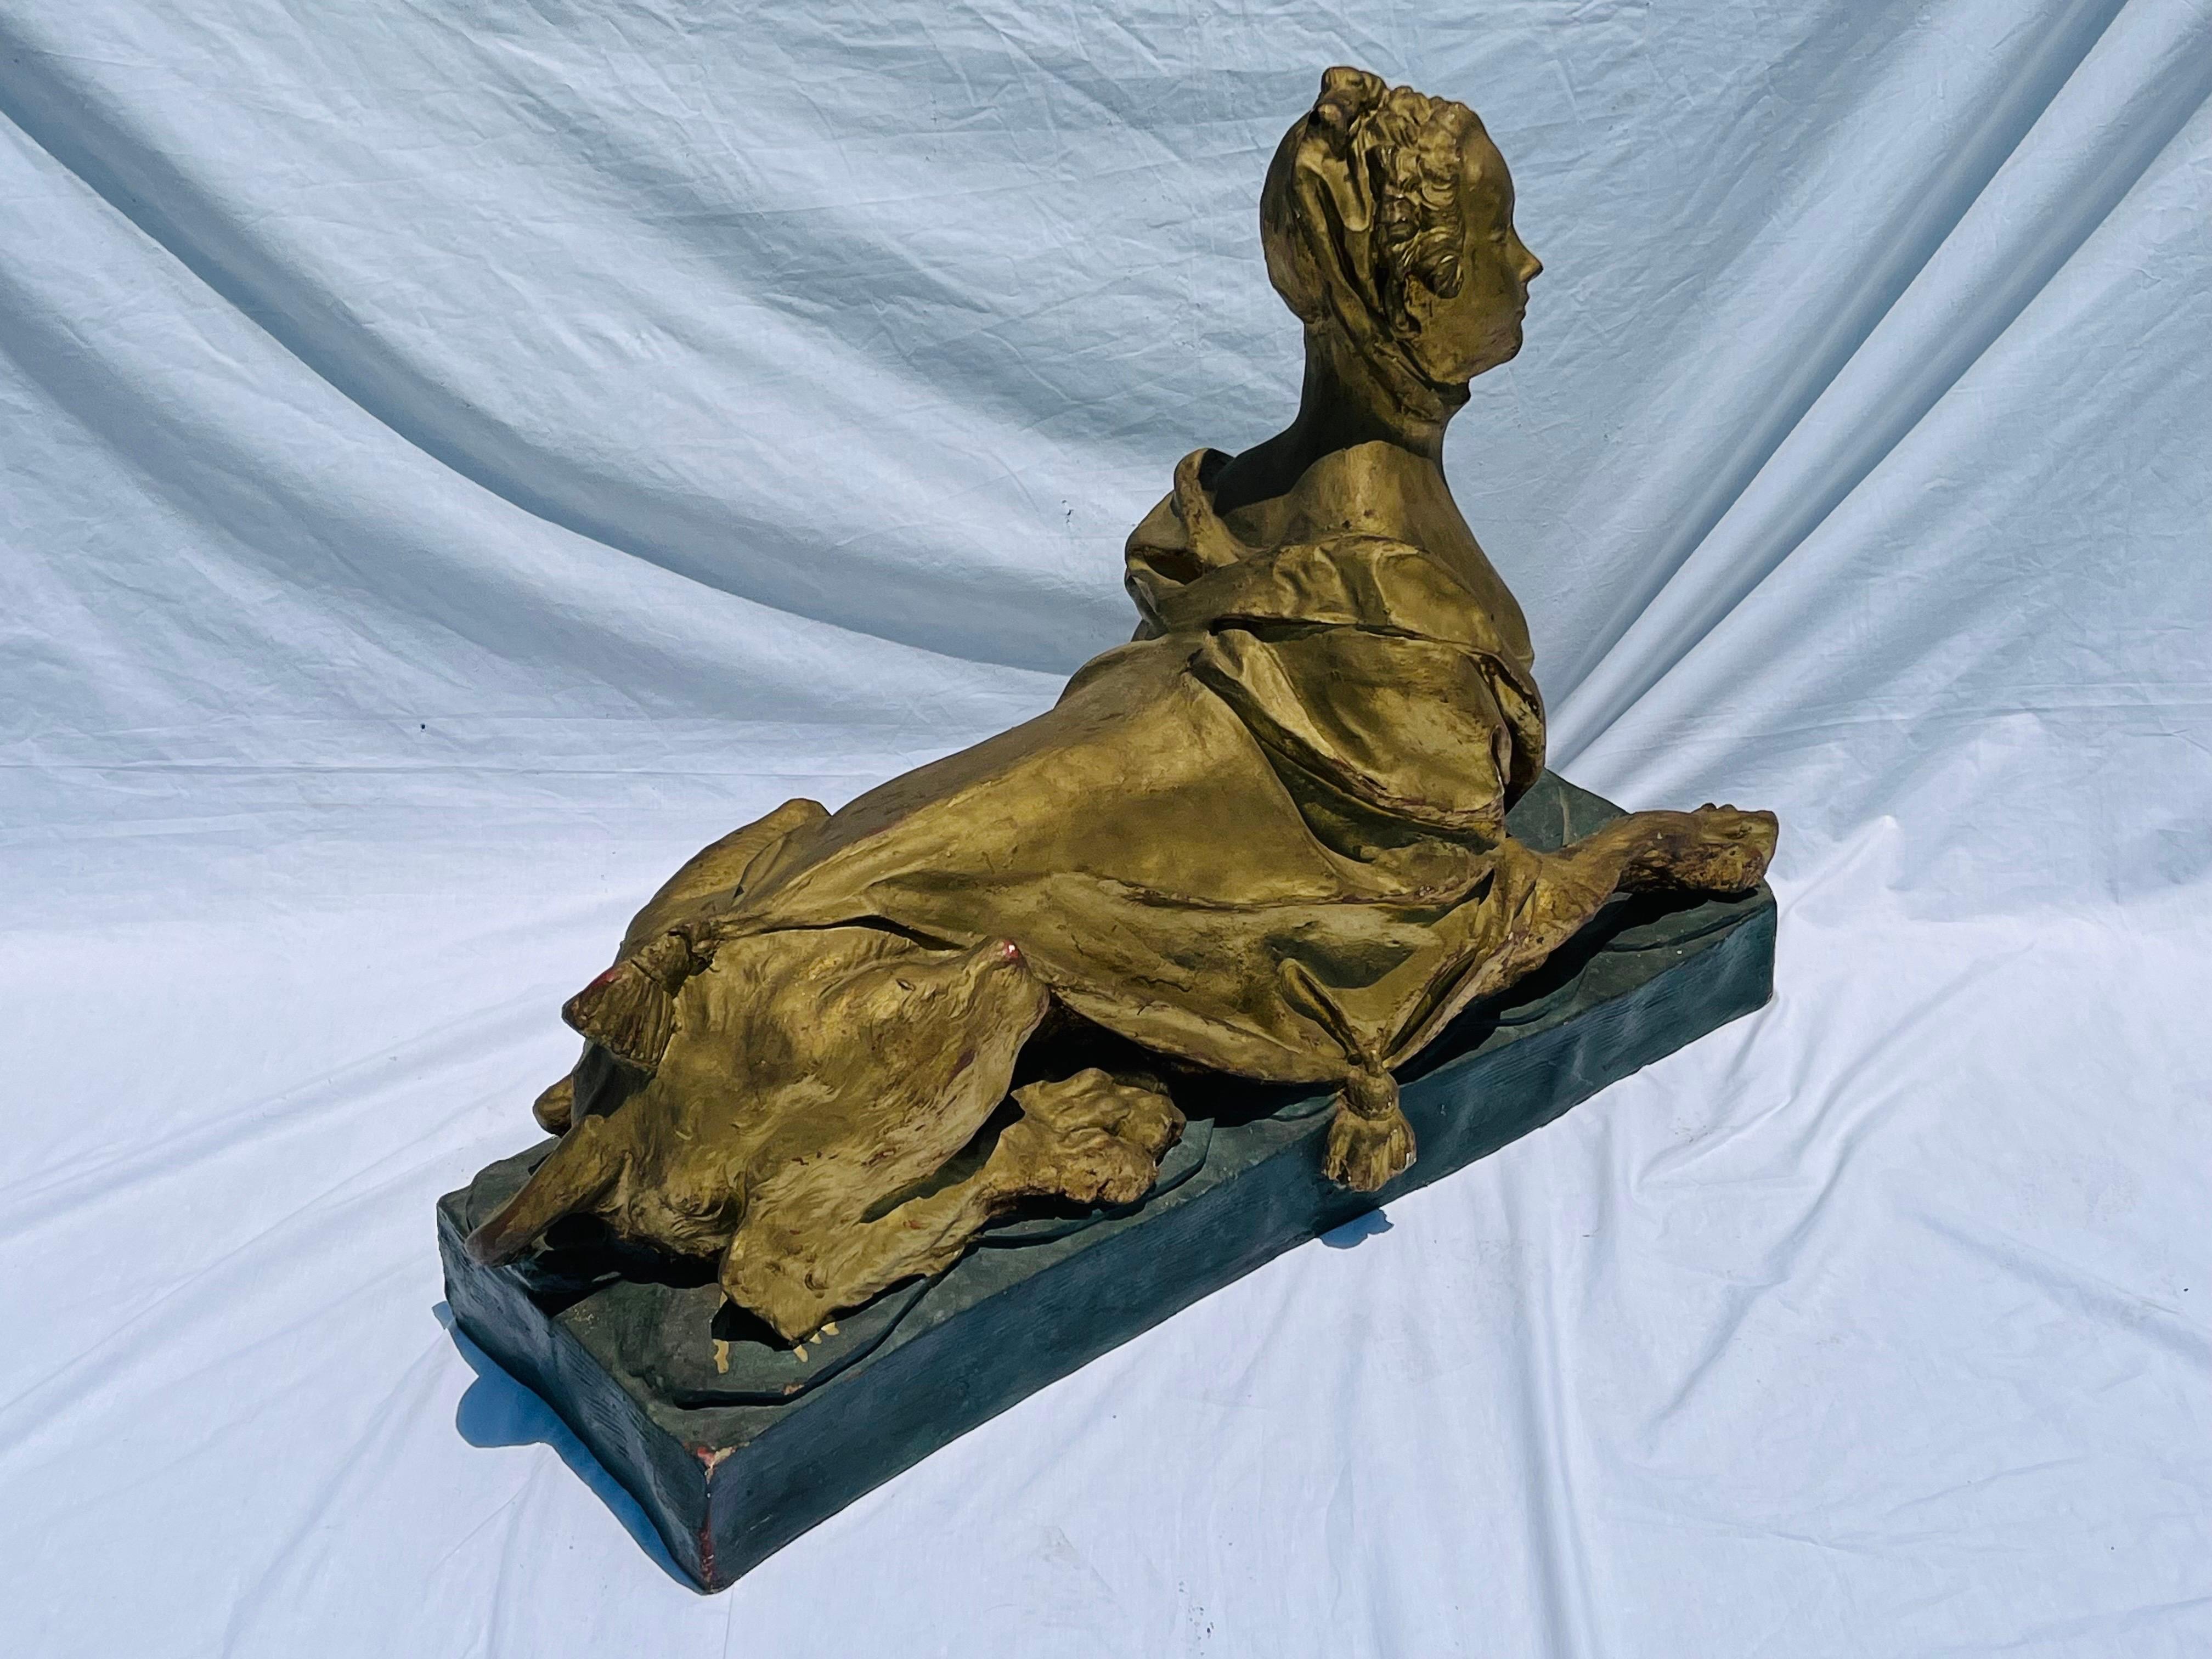 Cast Louis XV Style Sculpture of Madame de Pompadour as Sphinx on Faux Plinth Base